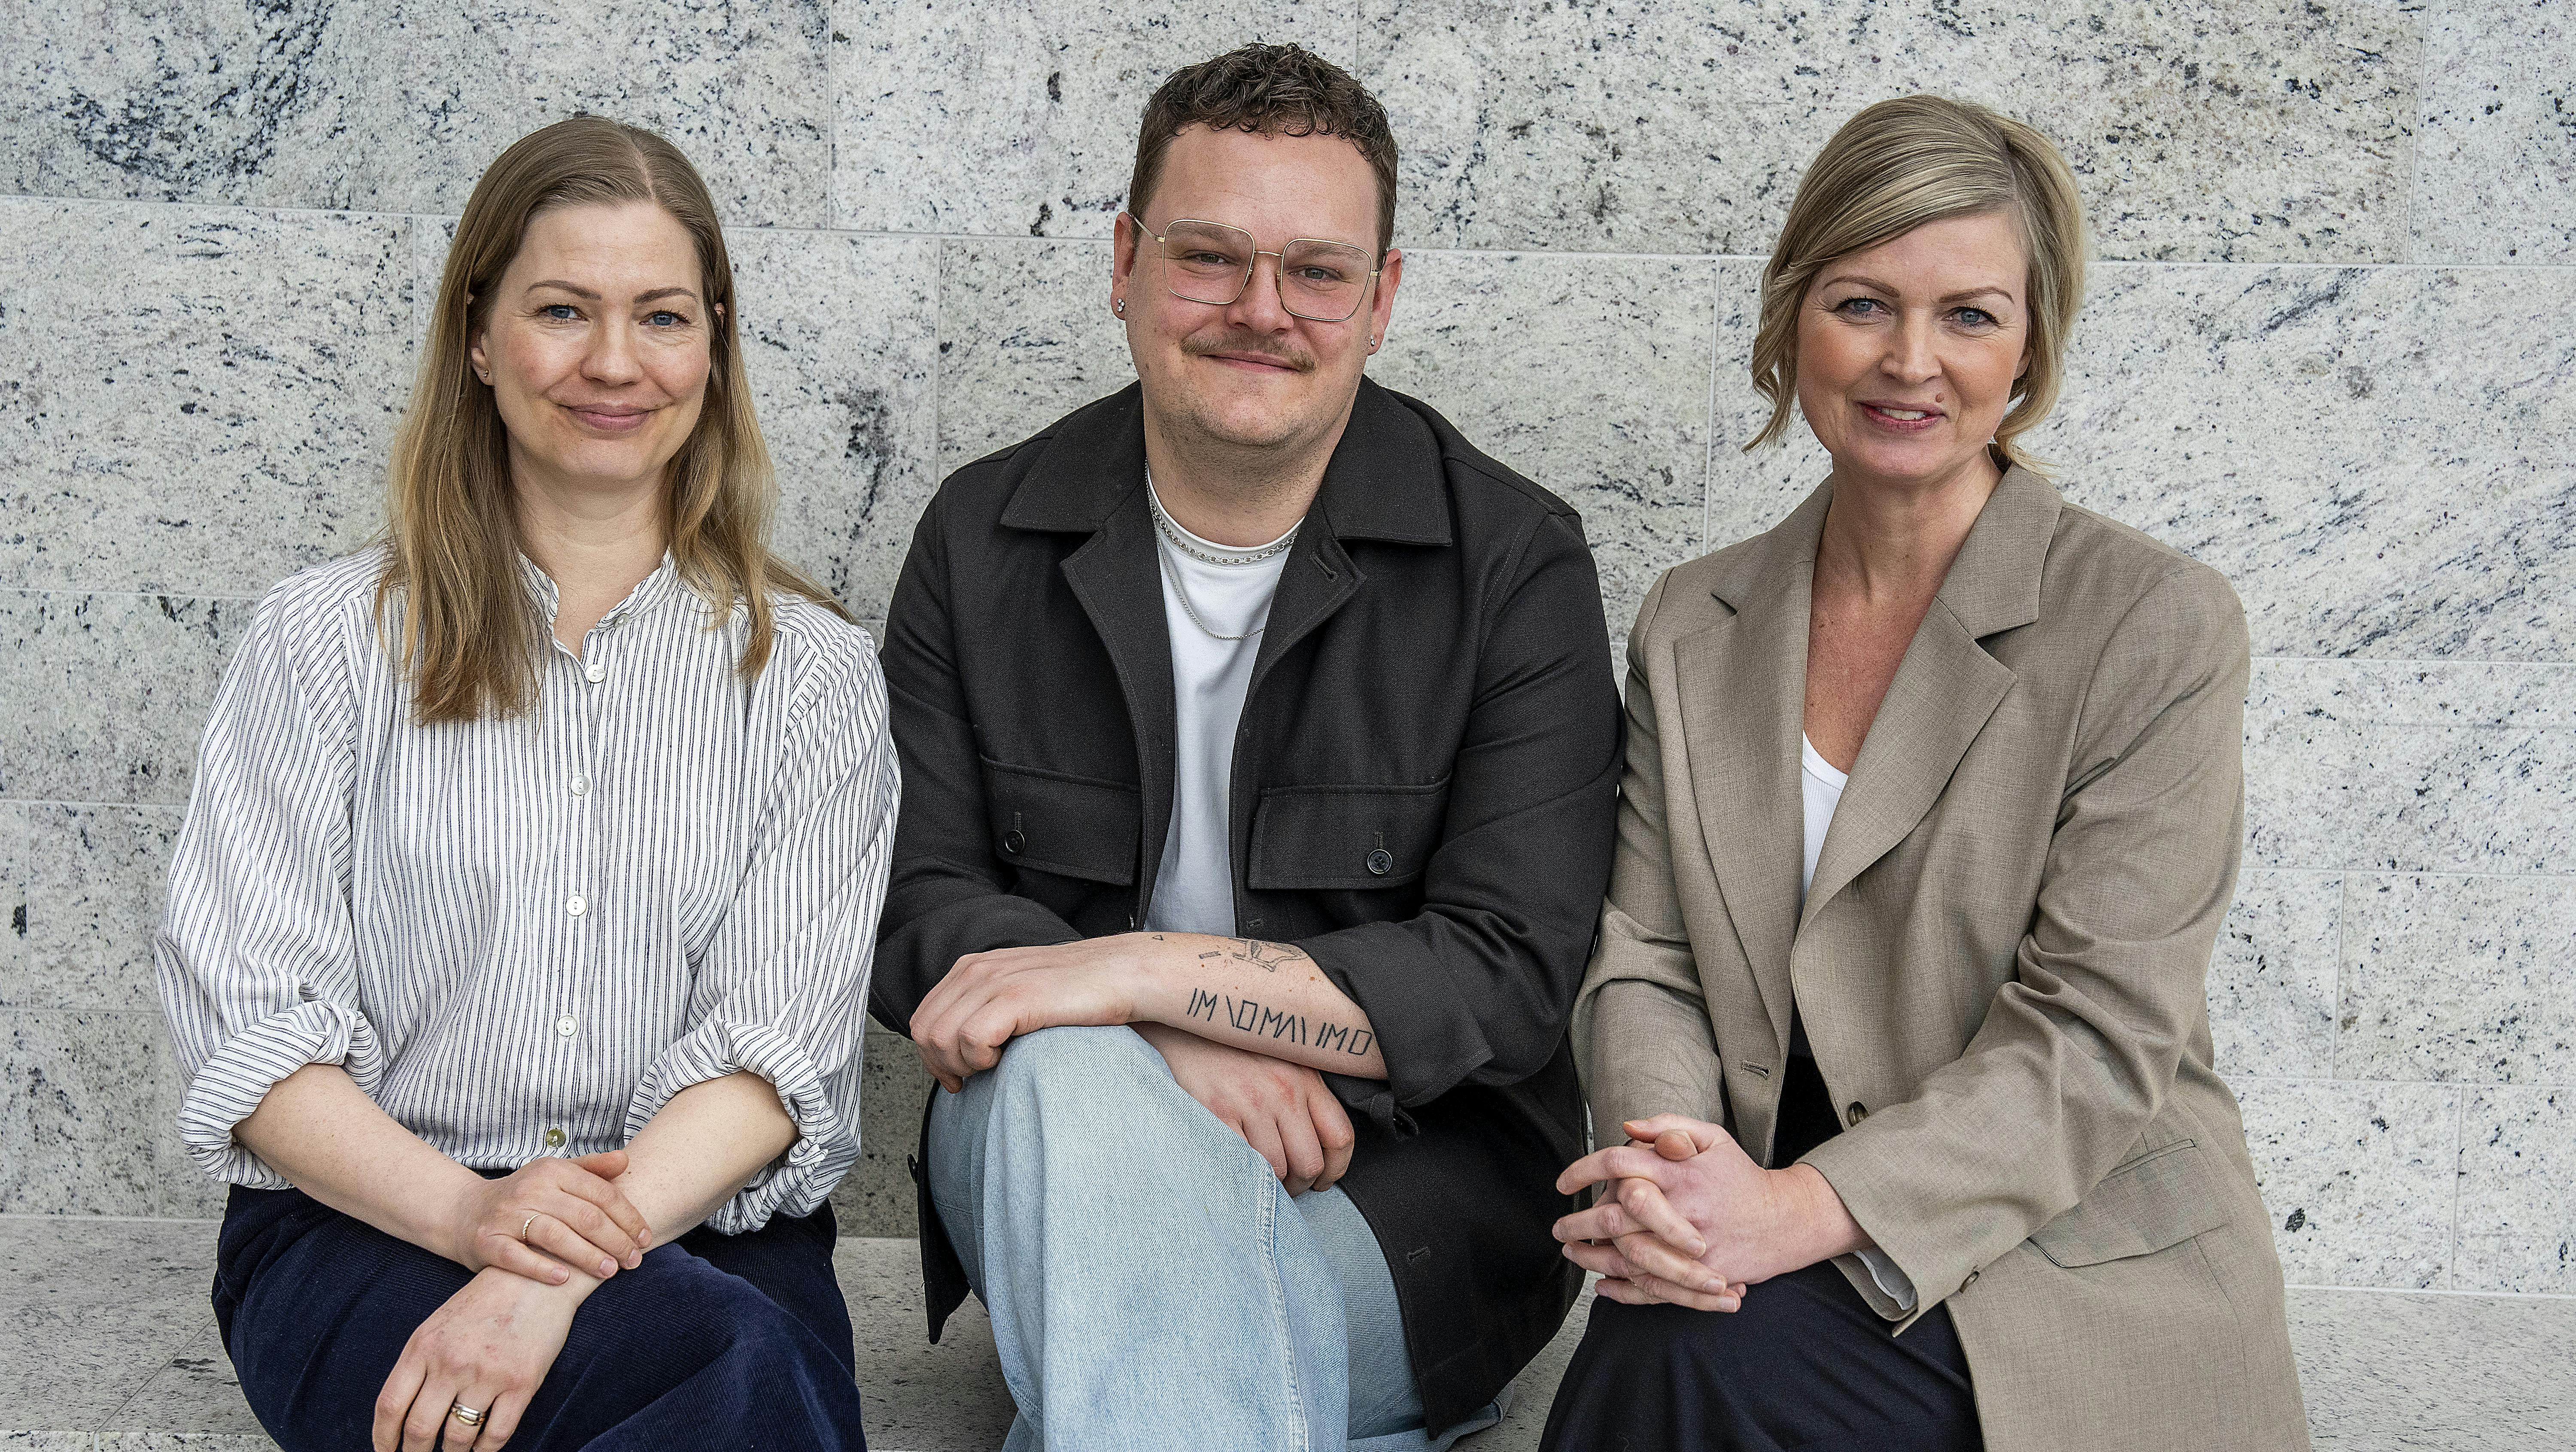 Ugens gæst i 'Det, vi elsker' er journalist og podcastvært Christoffer Mygind Juul